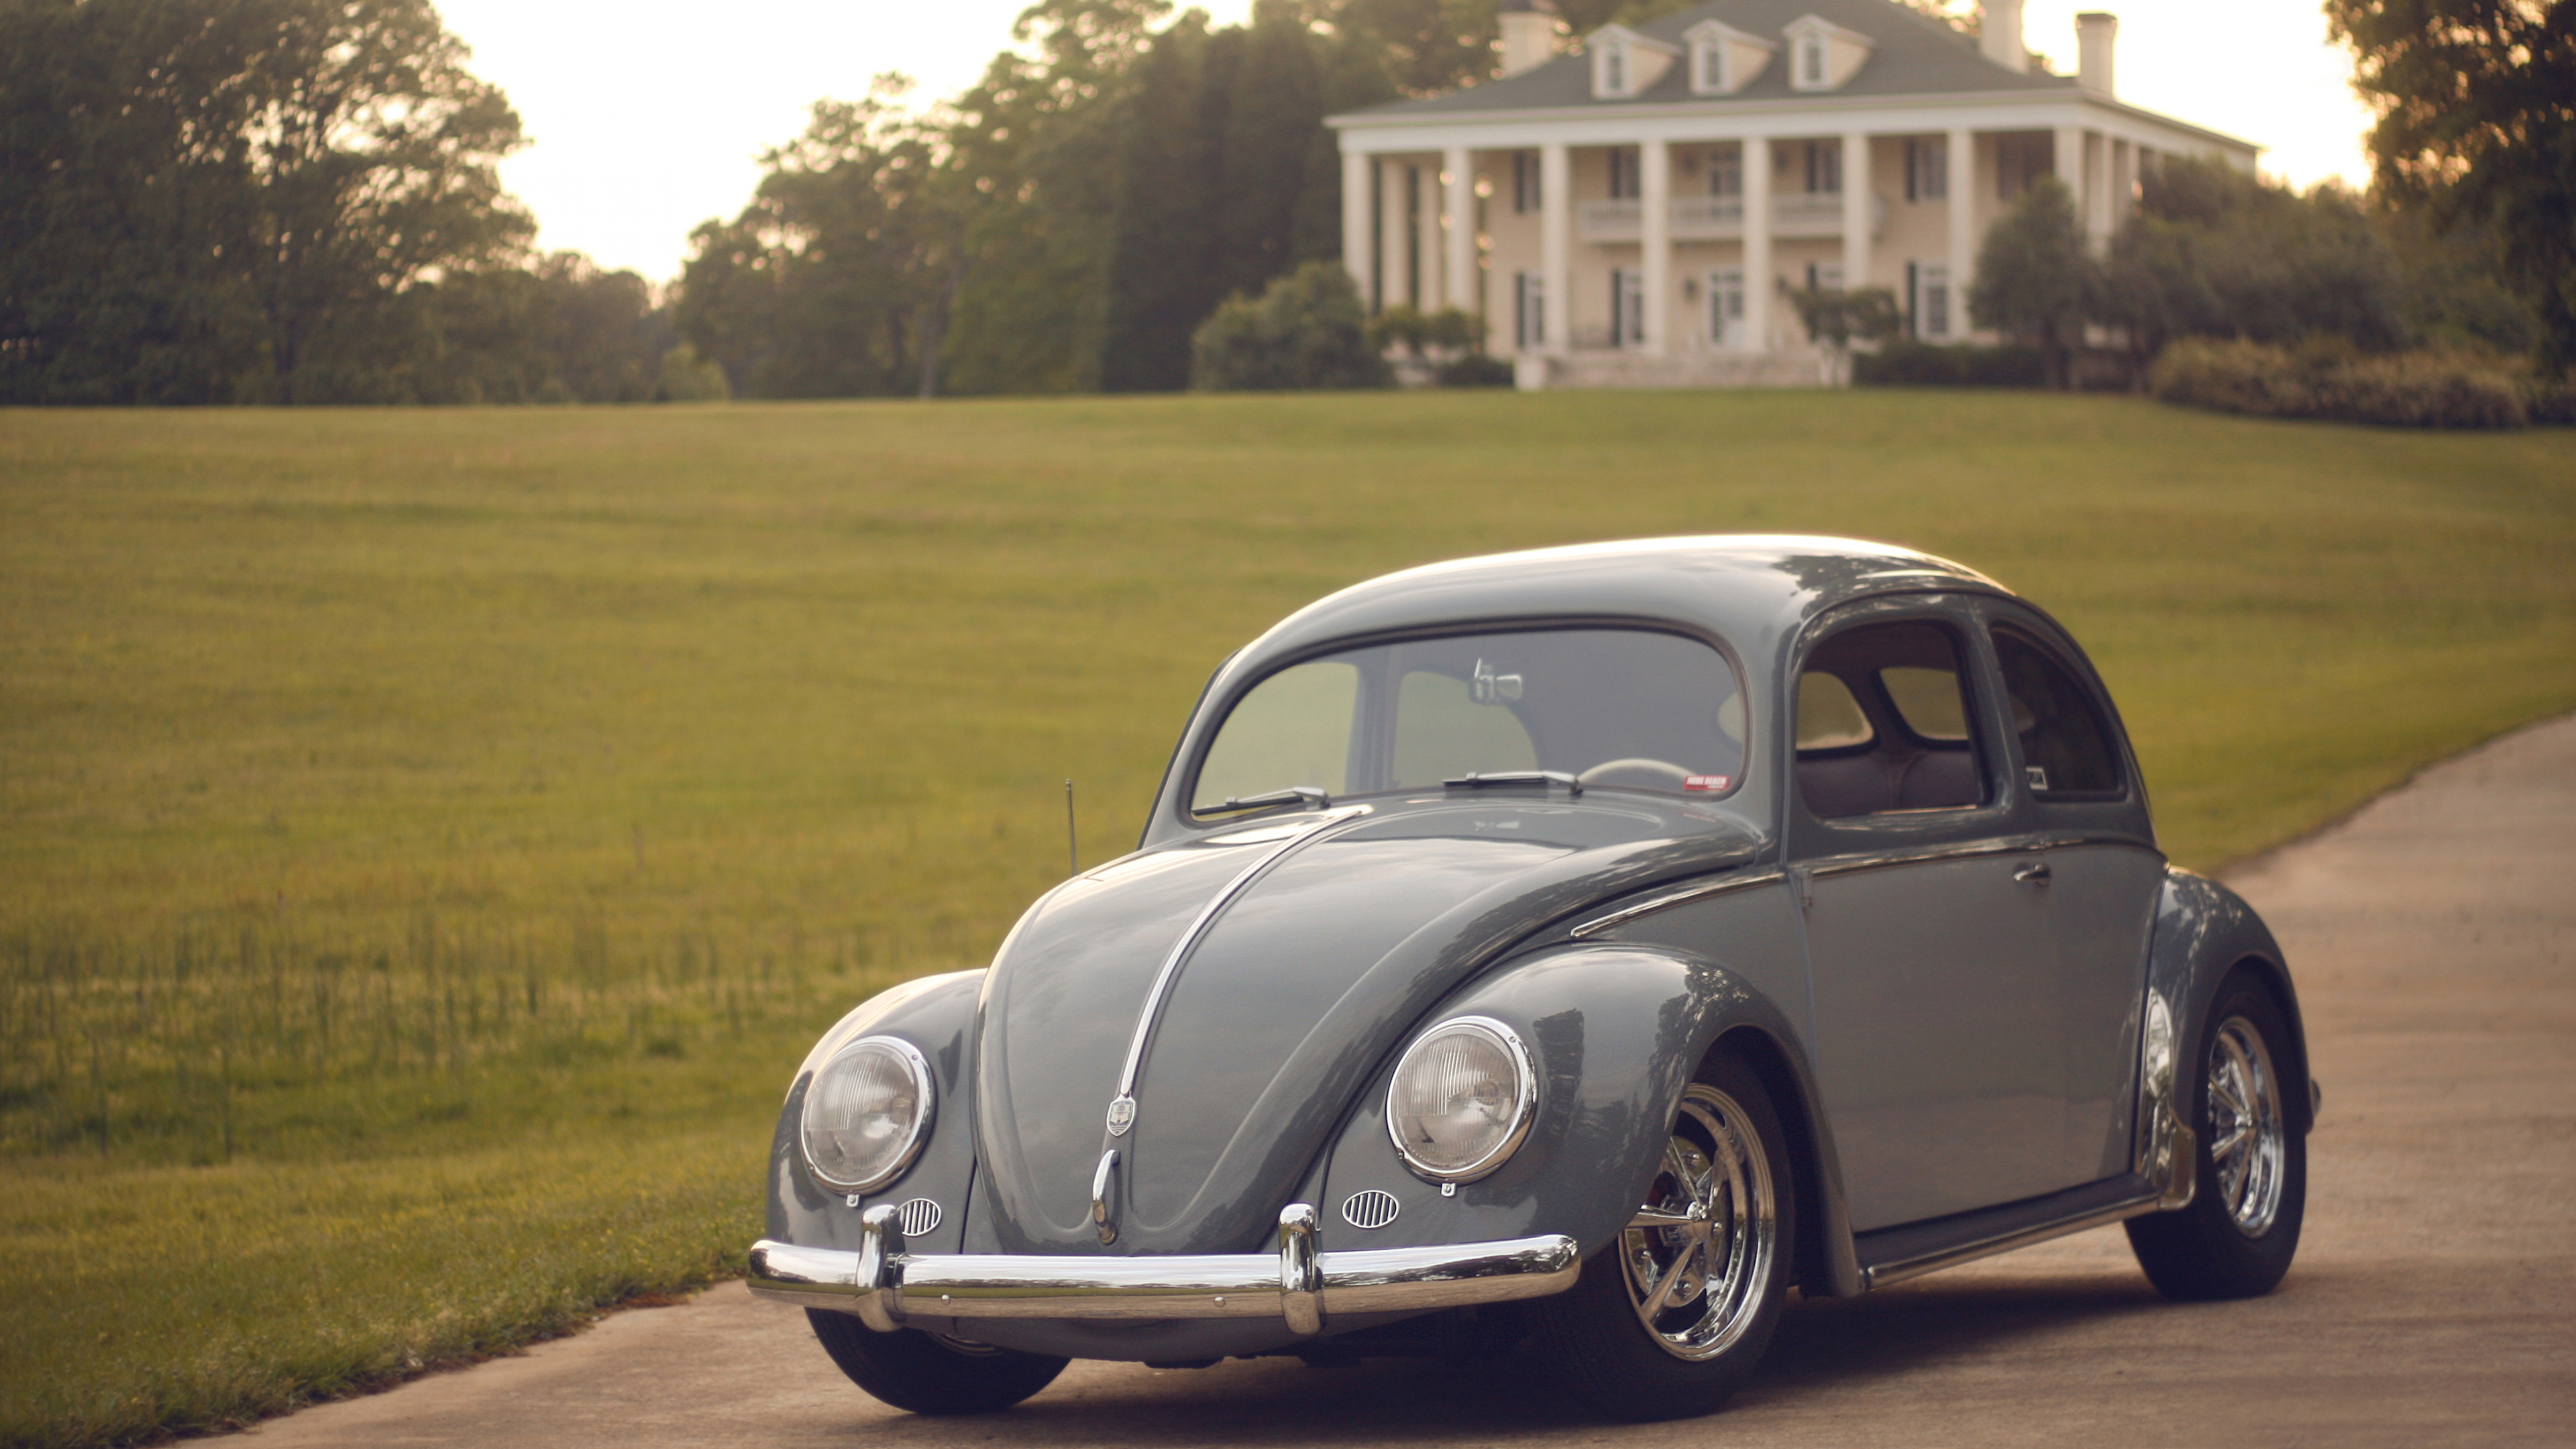 Volkswagen Beetle Noir Sur Terrain D'herbe Verte Pendant la Journée. Wallpaper in 3840x2160 Resolution